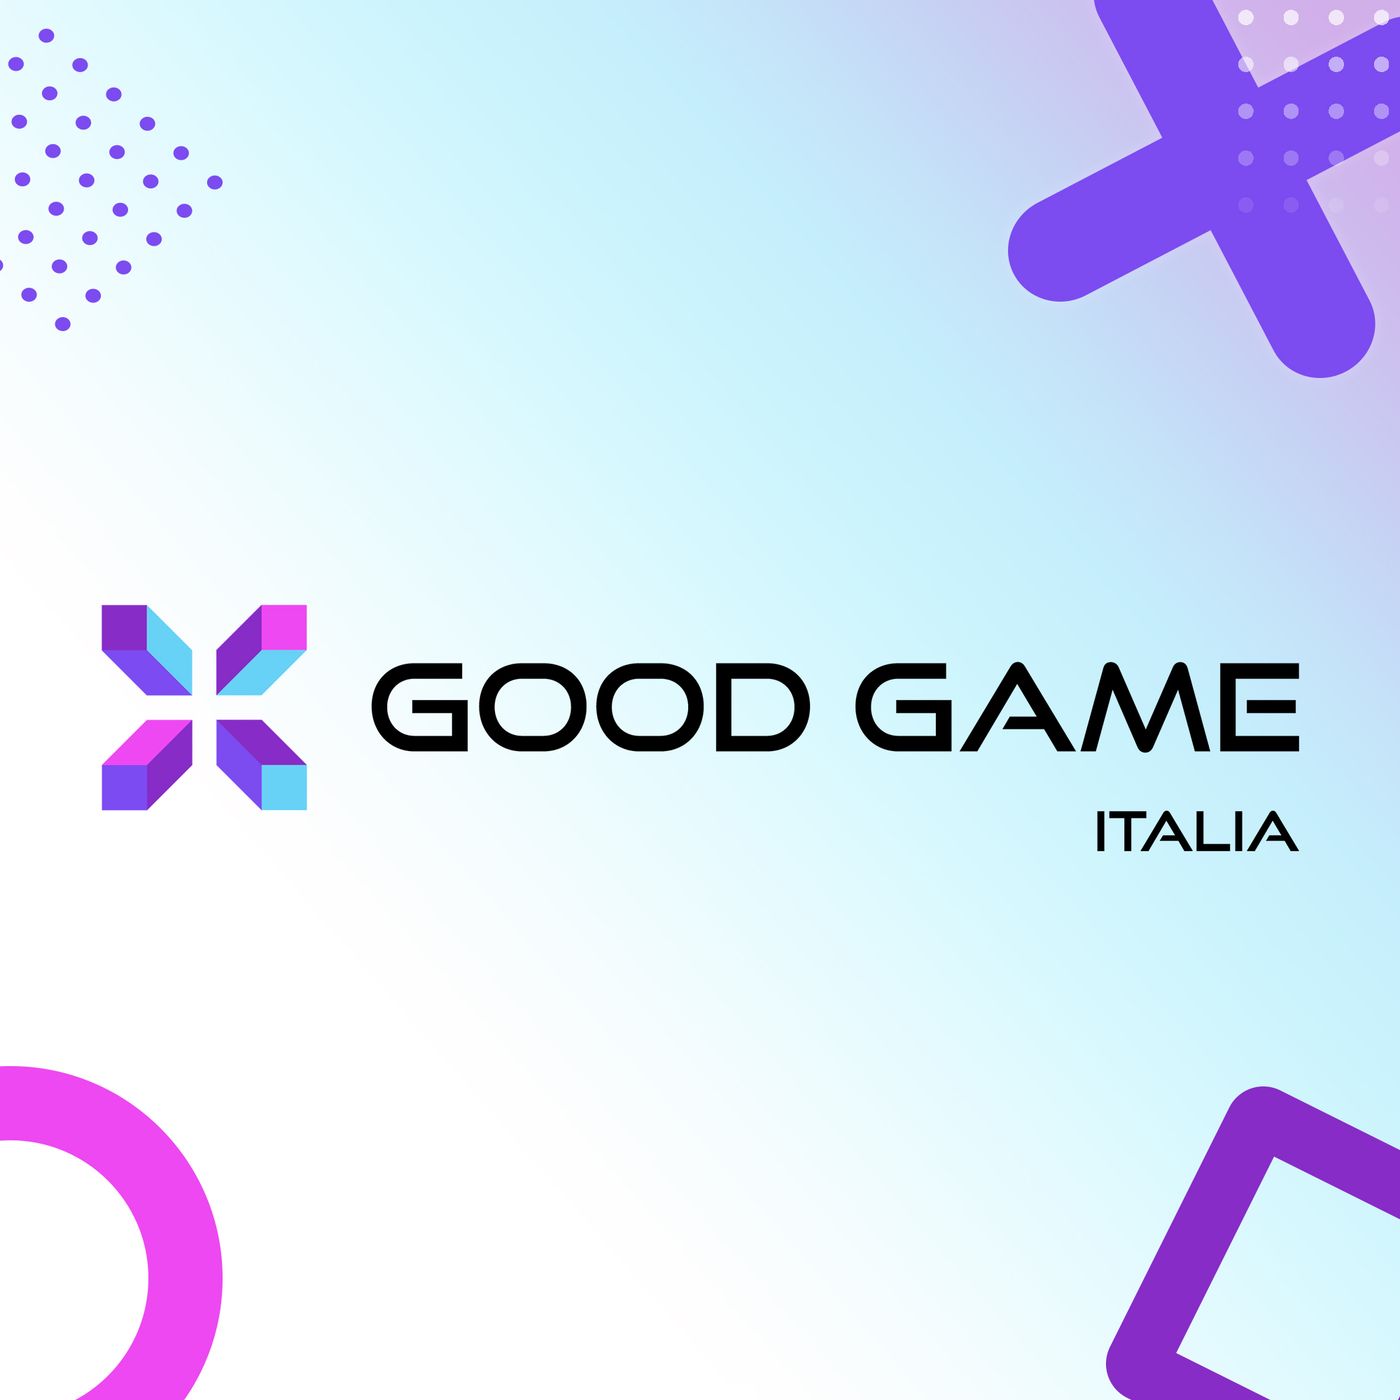 Ep 40 Gioco, videogioco, buone e cattive abitudini - con Marina Geymonat - Good Game Podcast